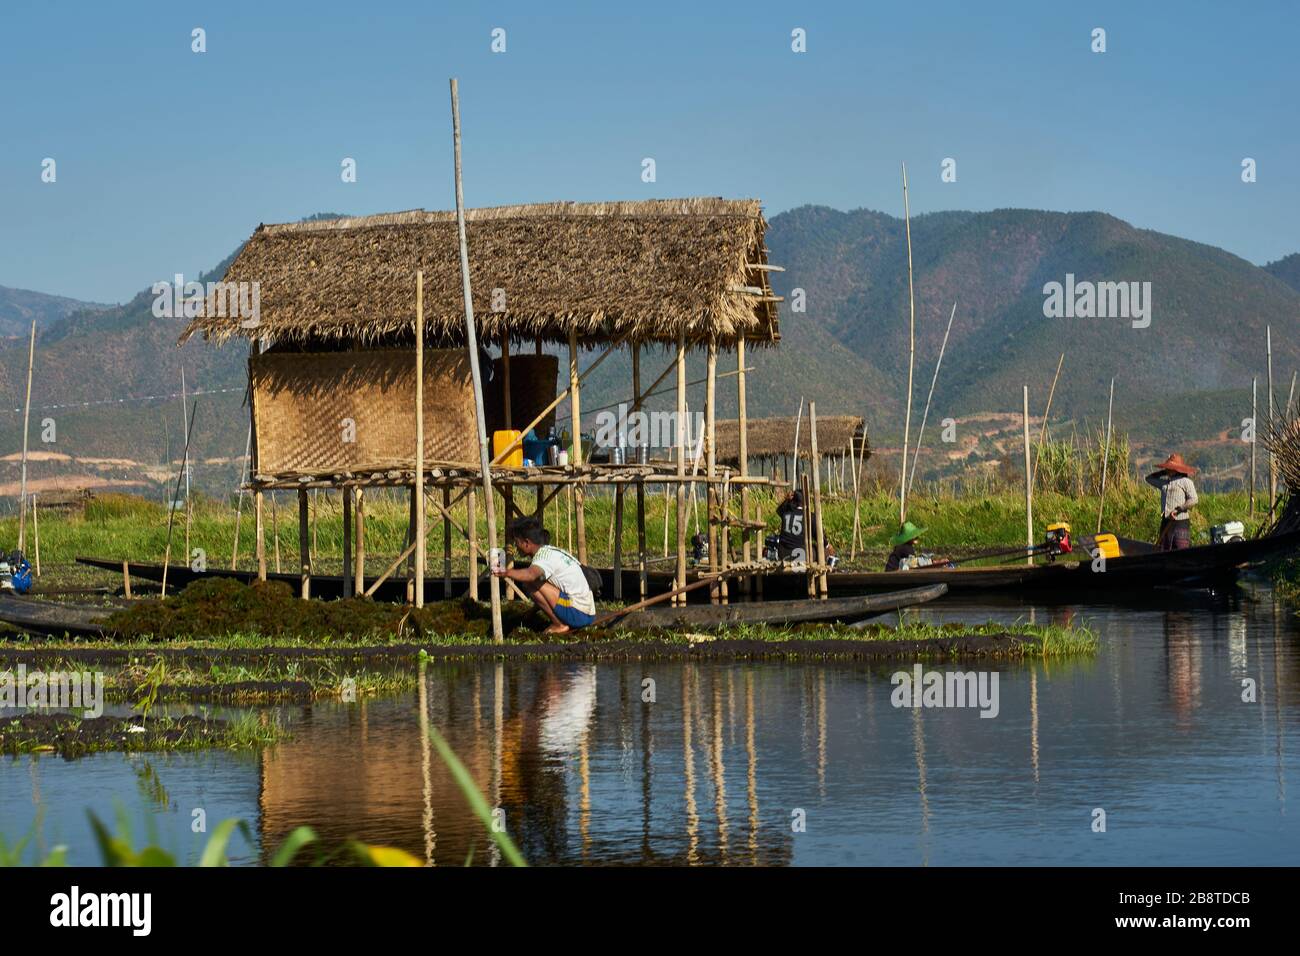 Mann hockt in Boot und legt neues Beet an, Hütte auf Stelzen, schwimmende Gärten, Inle-See, Shan-Staat, Myanmar Stock Photo